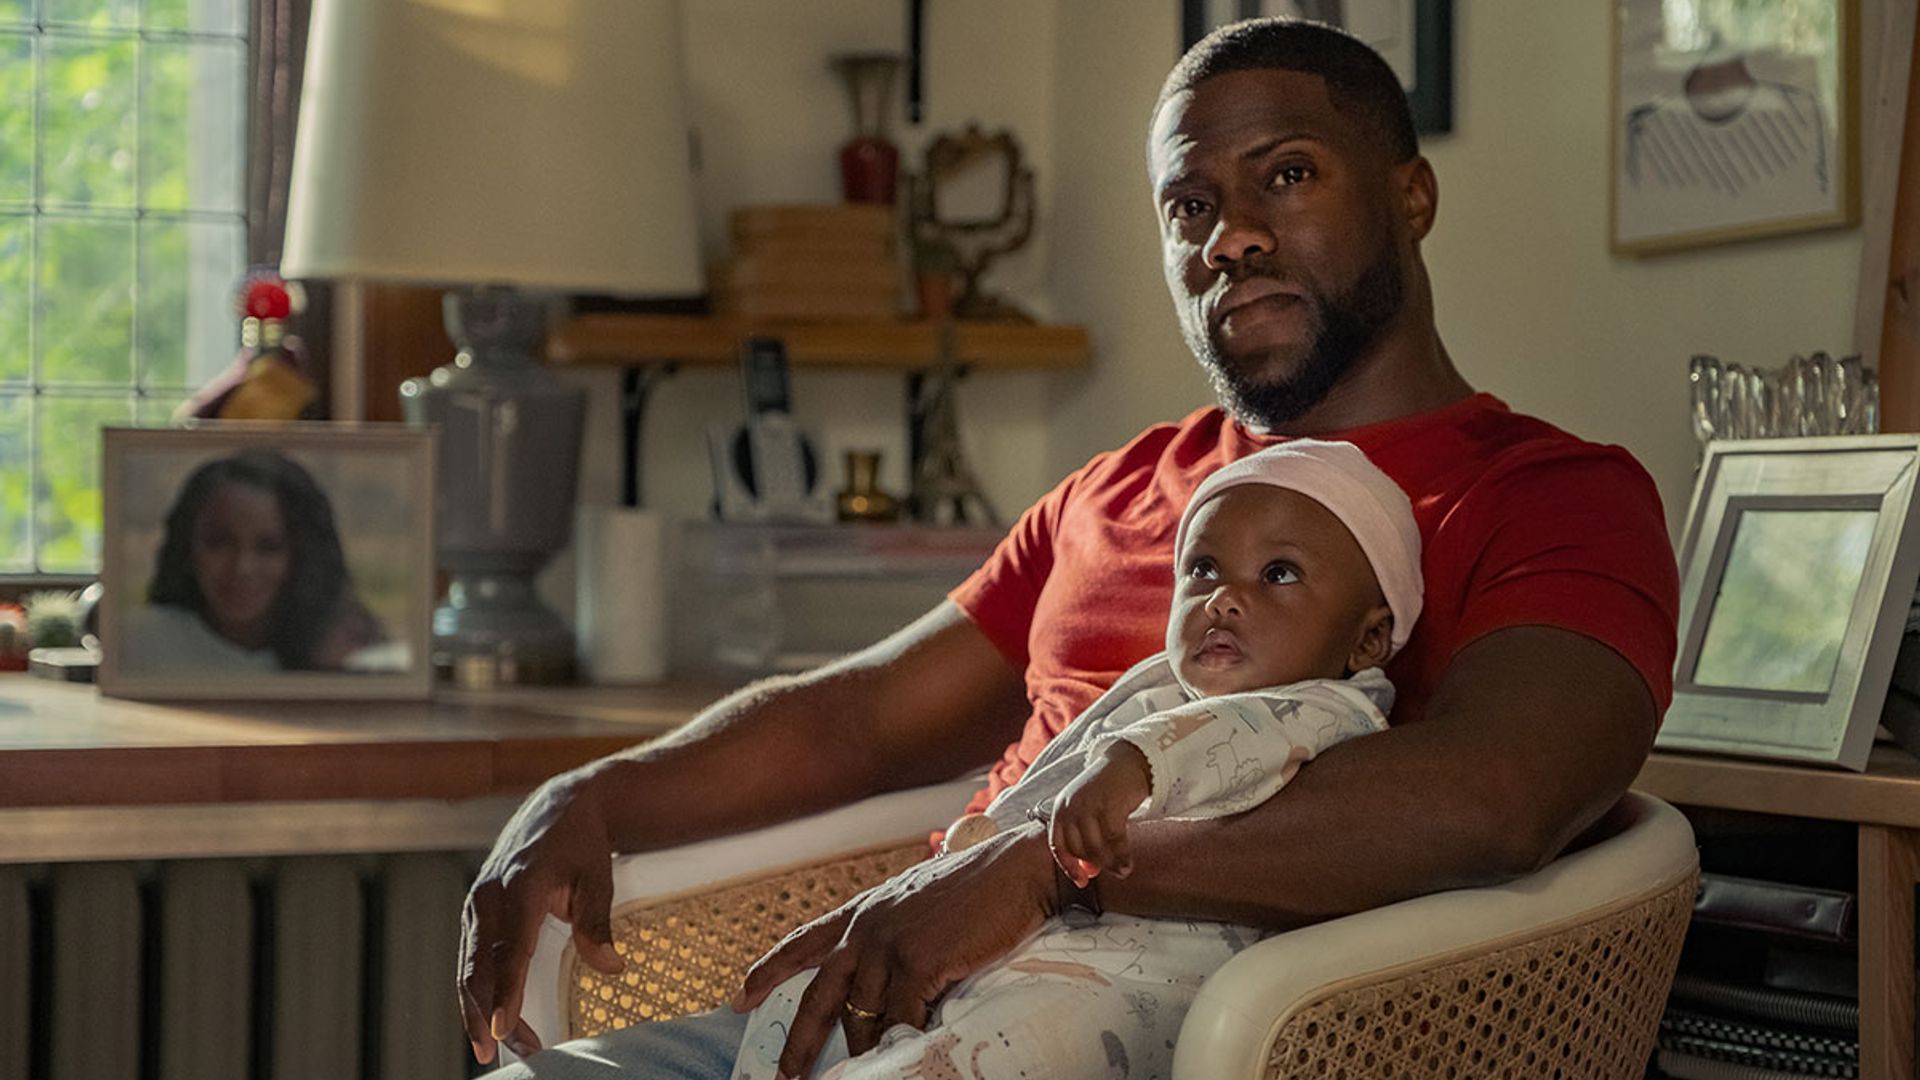 The heartbreaking true story behind new Netflix film Fatherhood